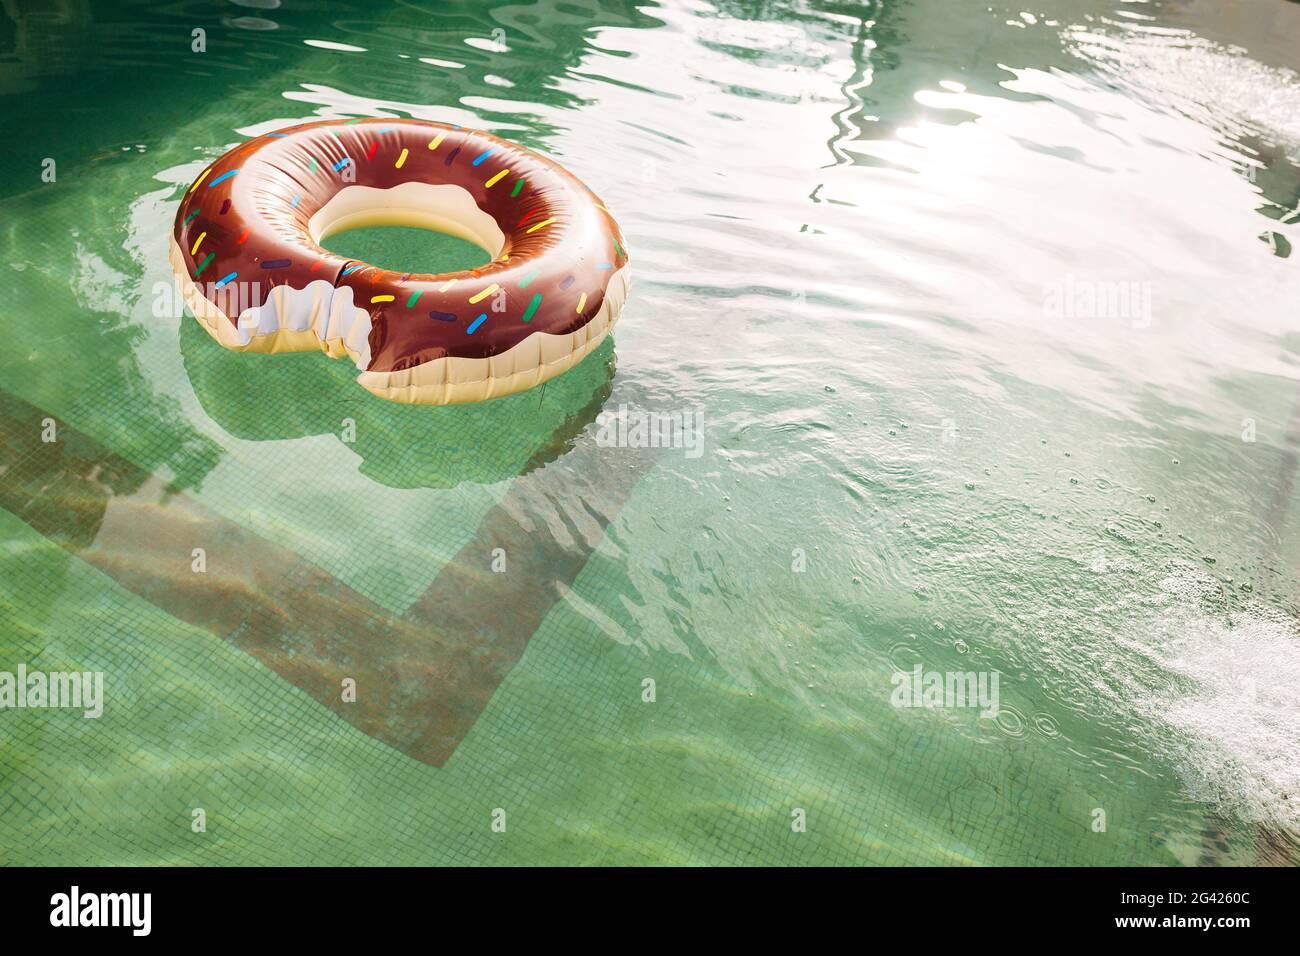 Im Wasser des Pools schwimmt ein Schwimmkreis in Form eines gebissenen Donuts. Stockfoto